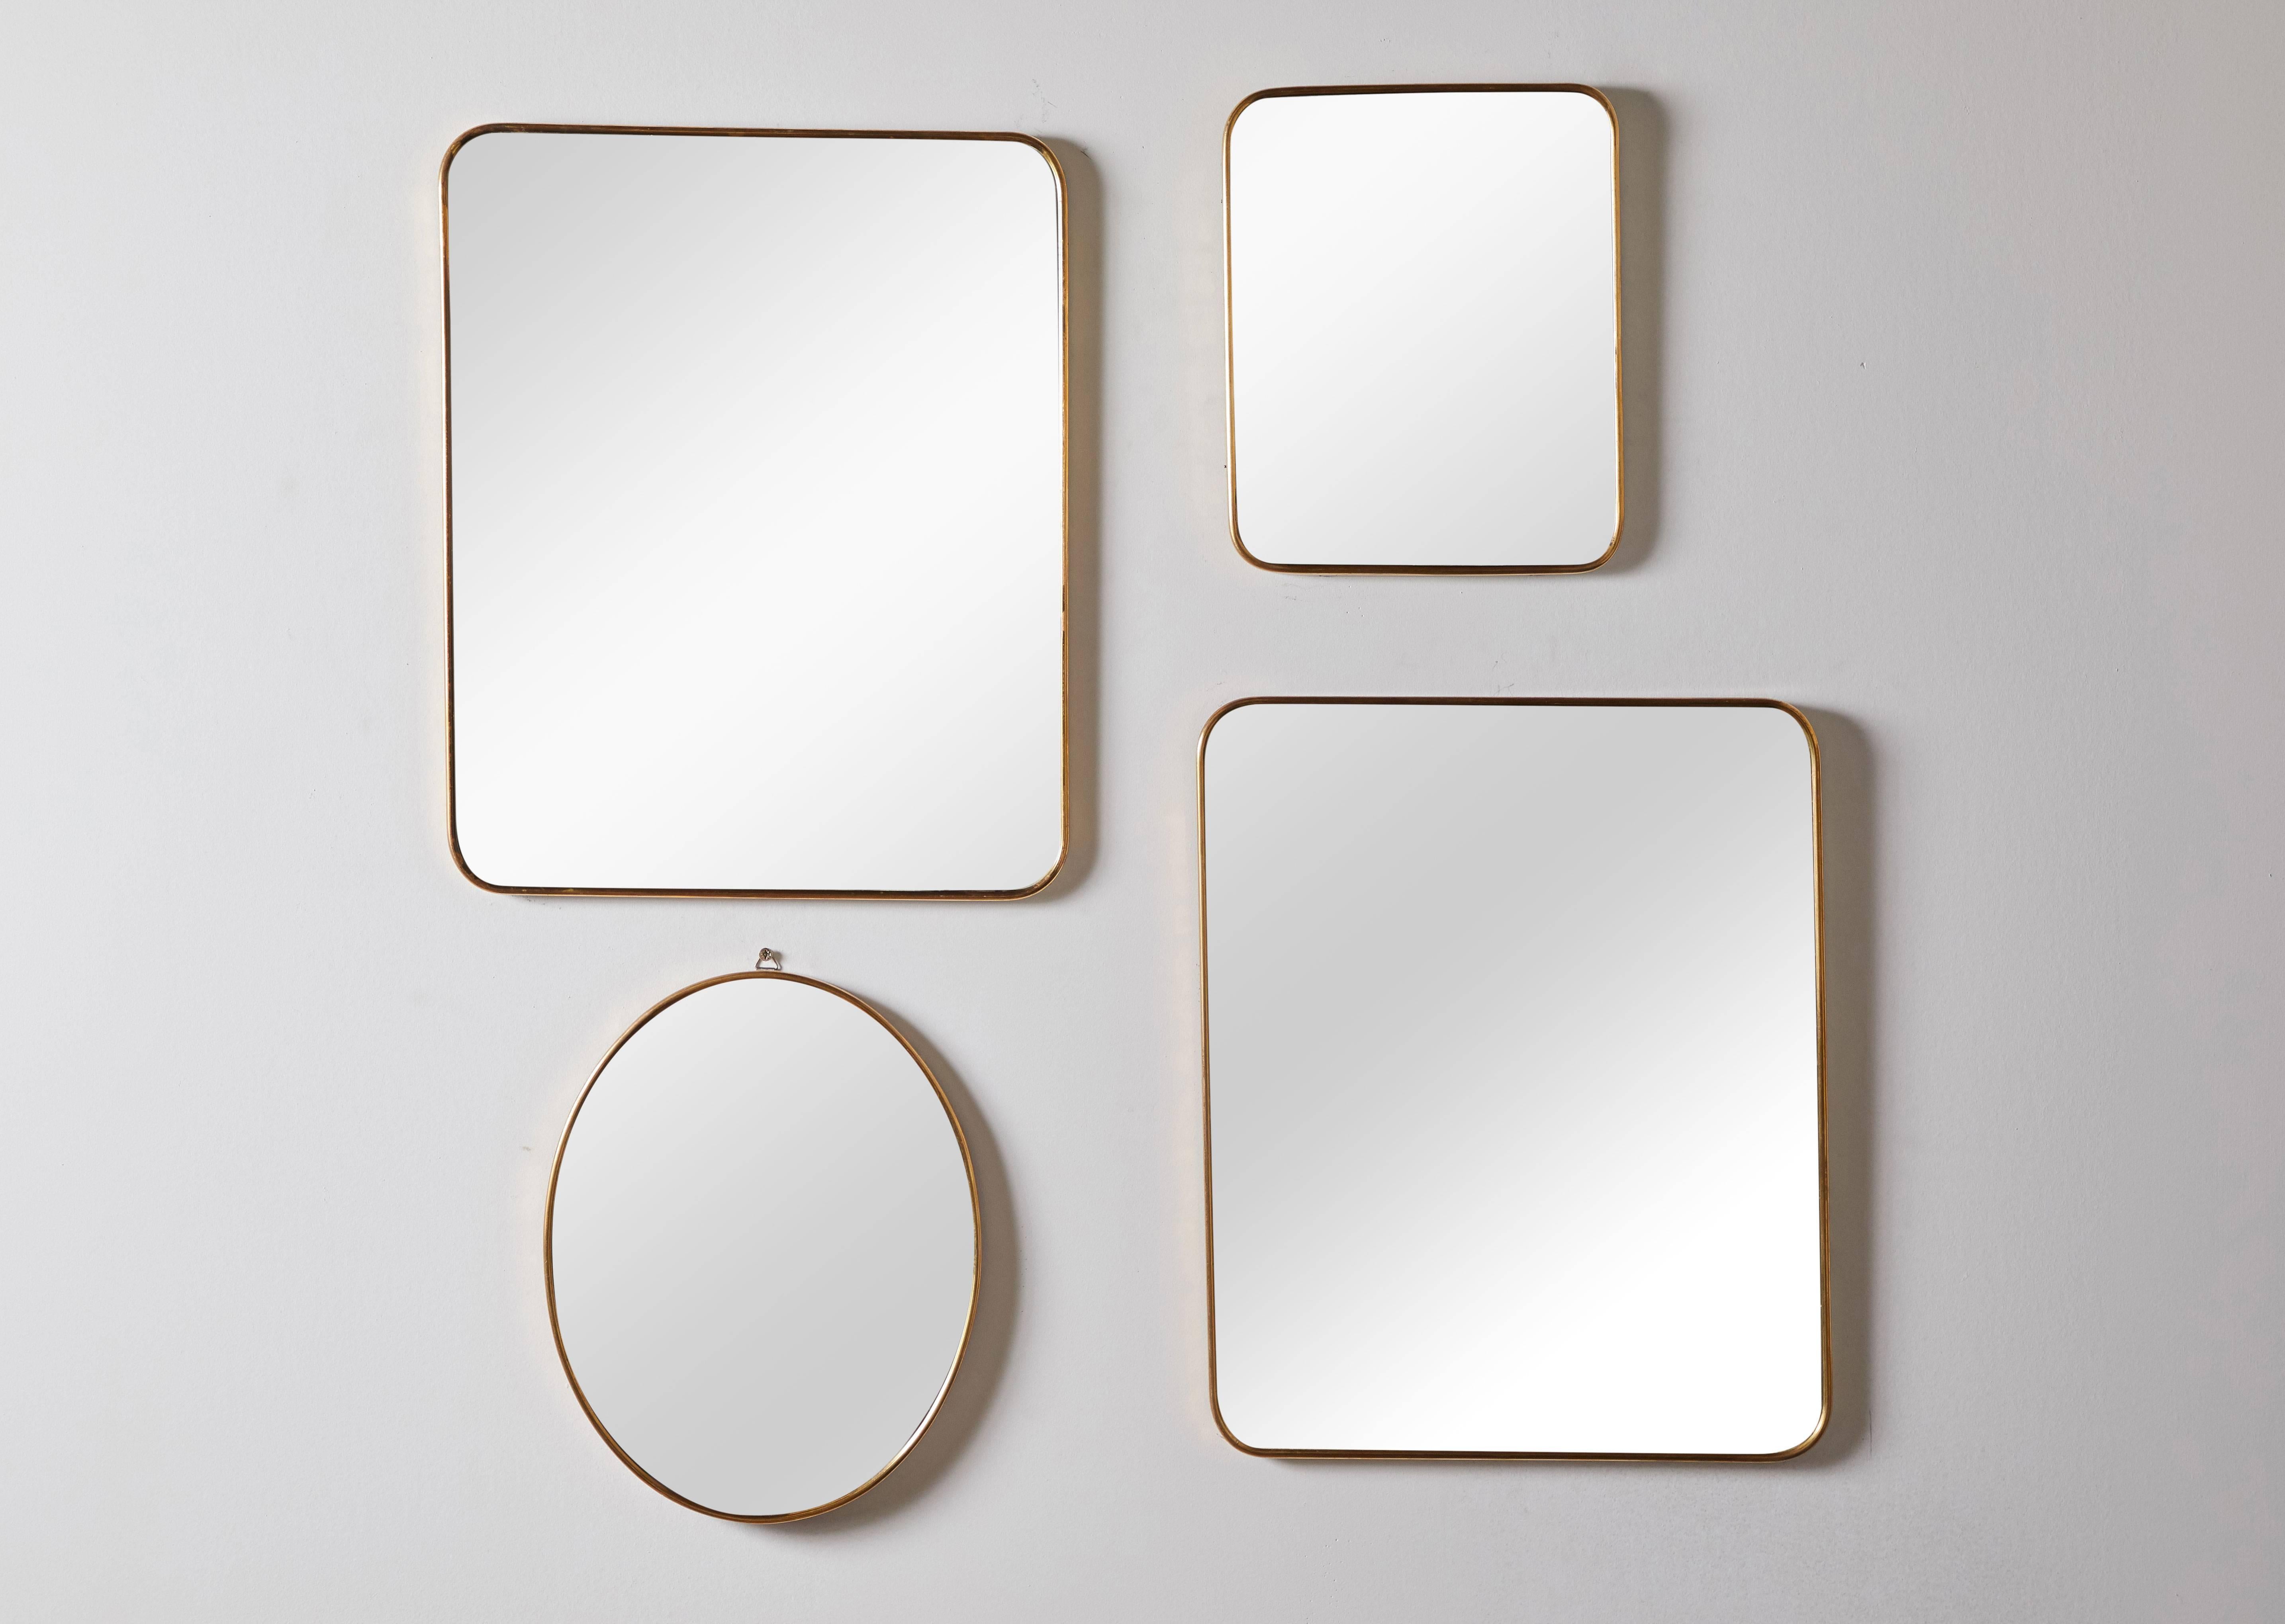 Miroirs muraux italiens encadrés de laiton. Fabriqué en Italie dans les années 1960. Chaque article est vendu séparément. Les dimensions et les prix varient.  Dimensions :
Grand rectangle (2) 16,5